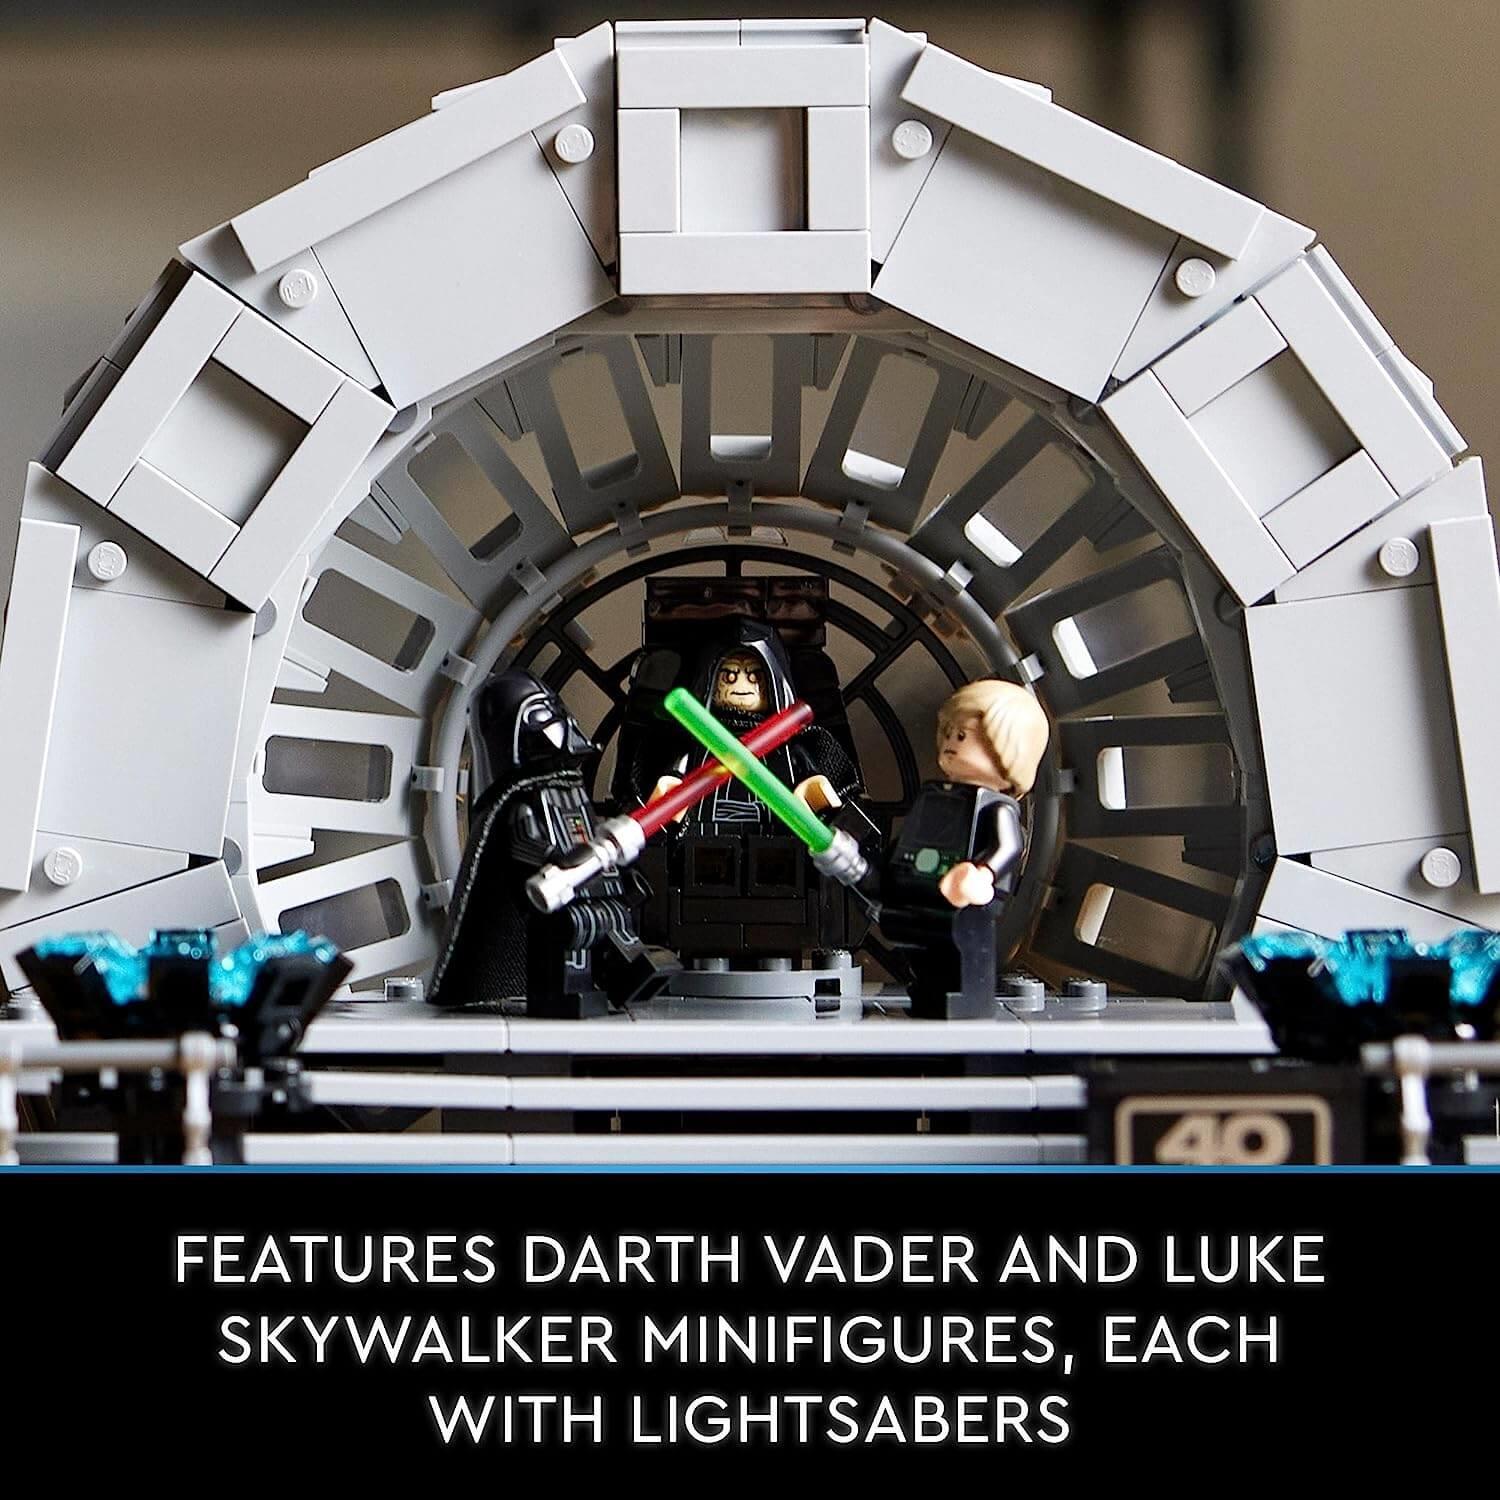 Lego Star Wars 75352 Emperor's Throne Room Diorama